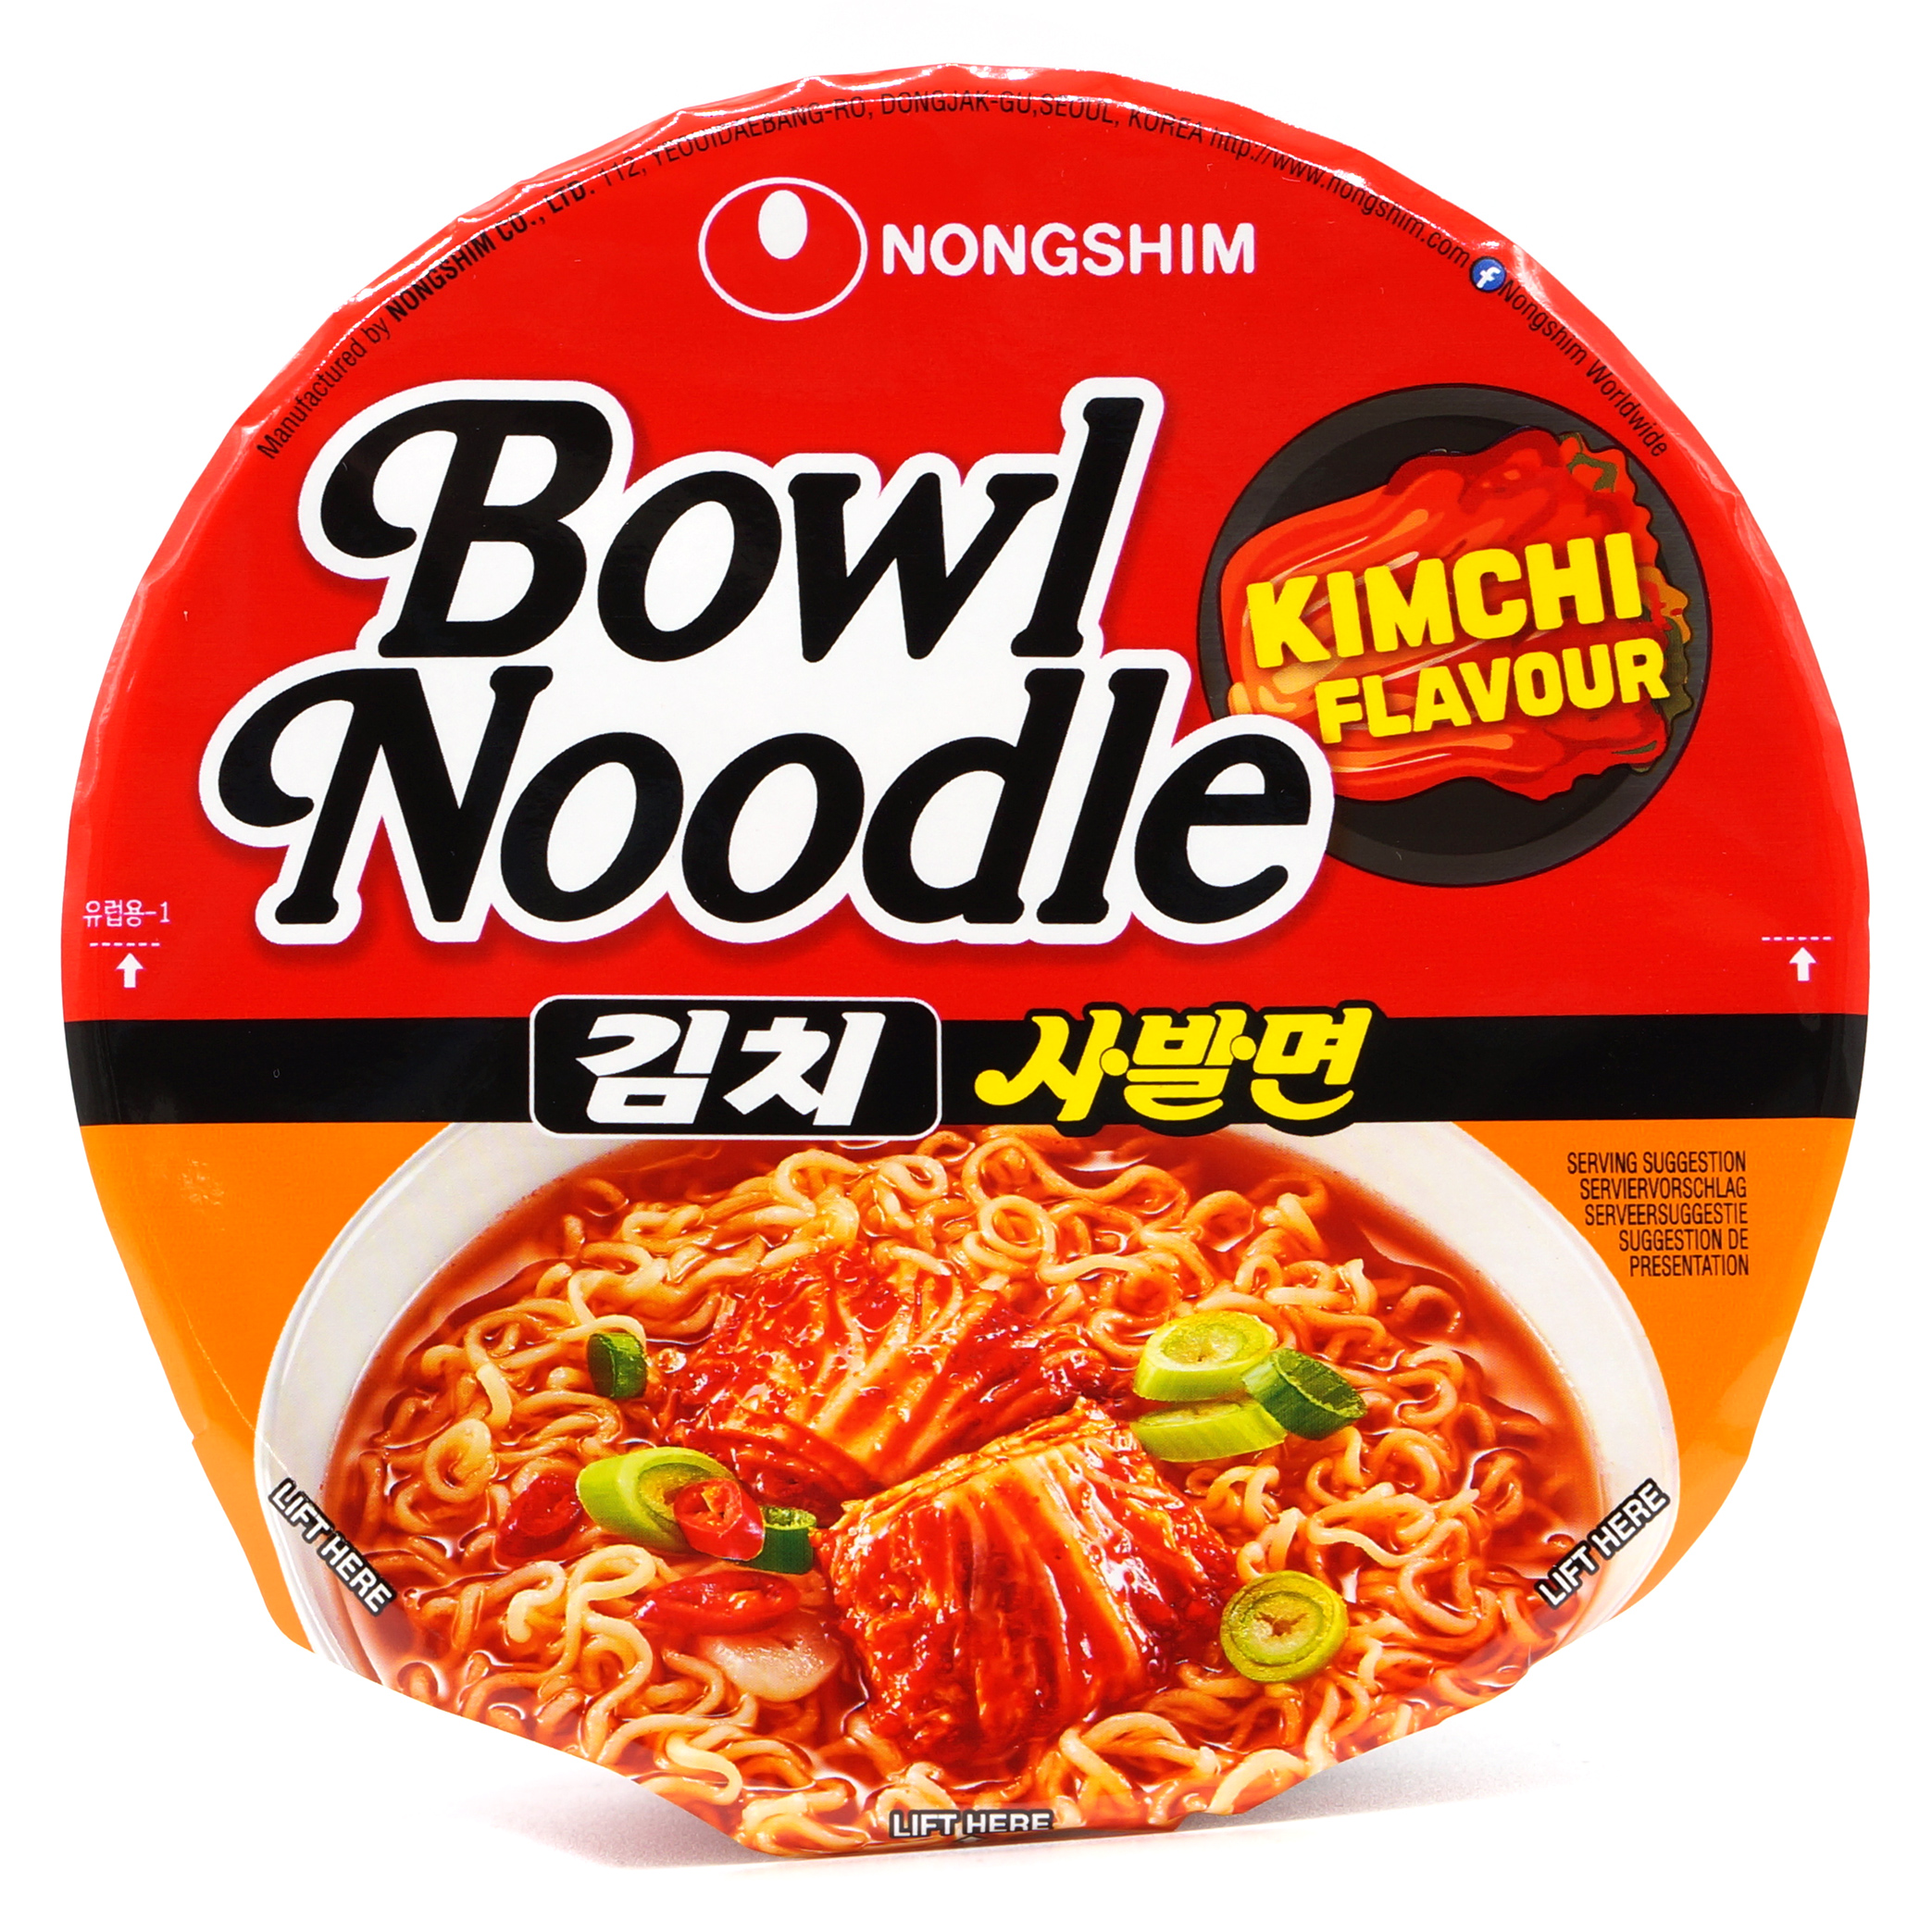 Bowl Noodle Kimchi - Nong Shim - 100g